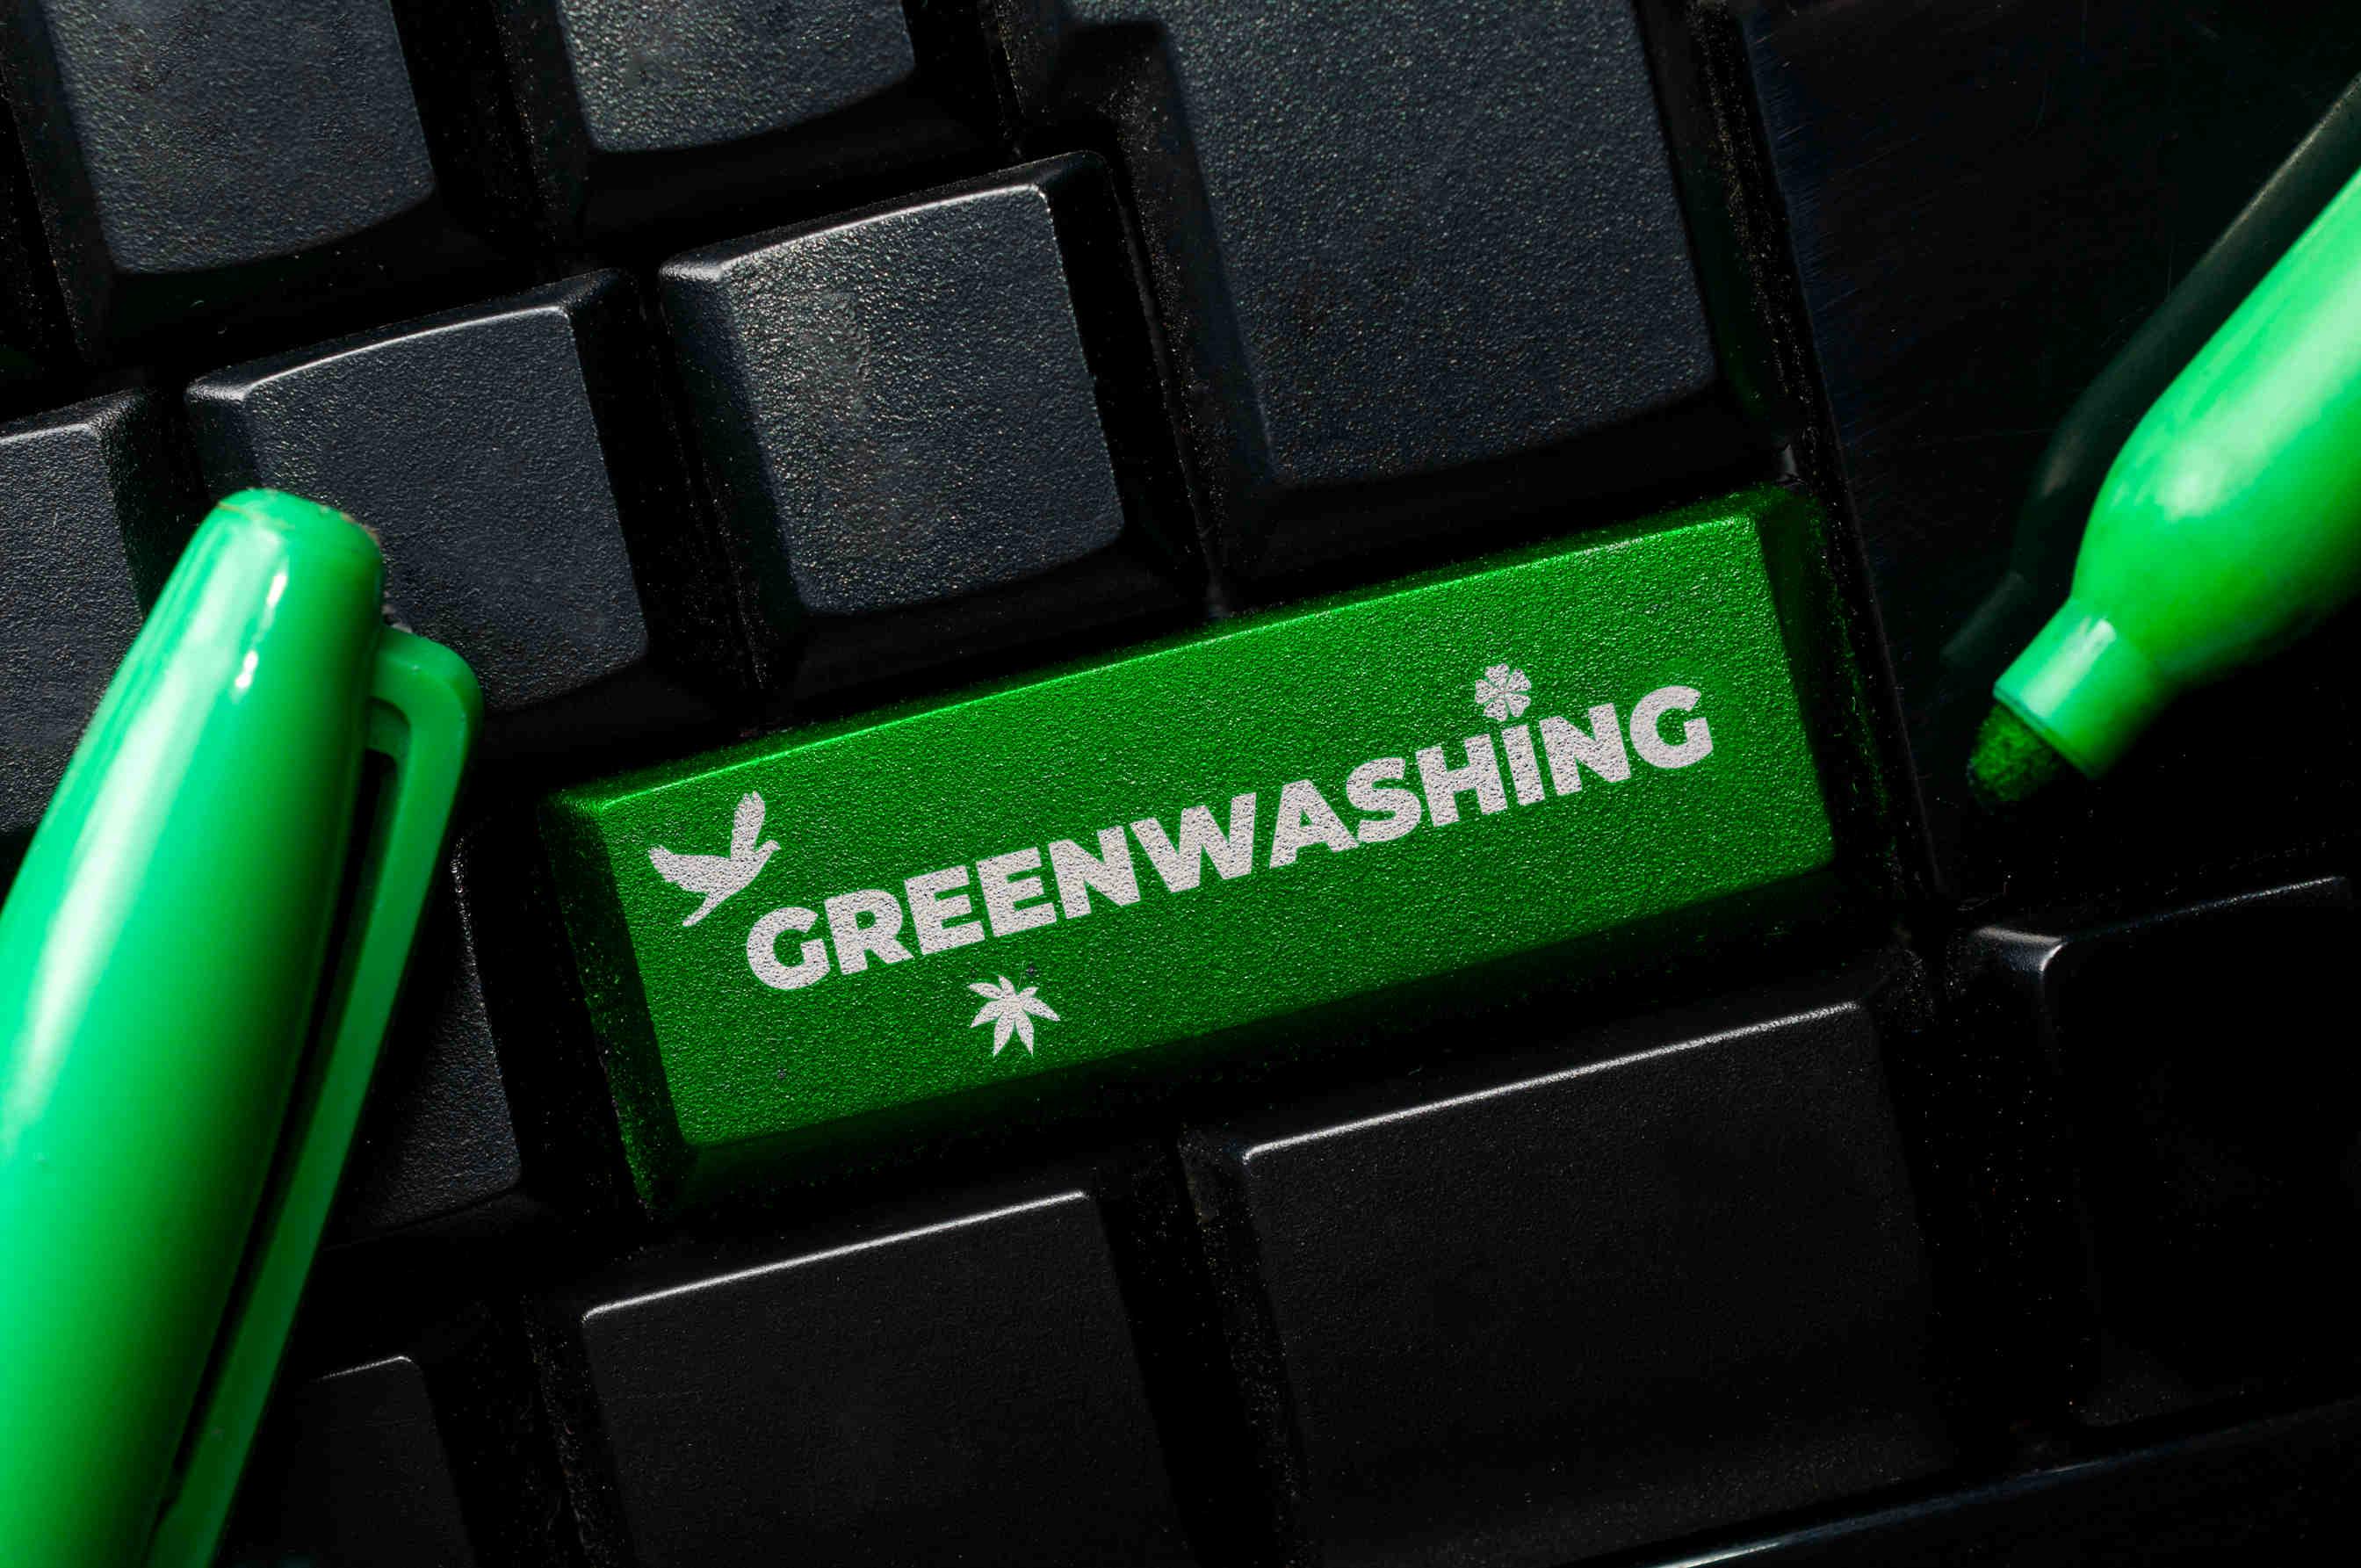 Meno tolleranza verso il greenwashing